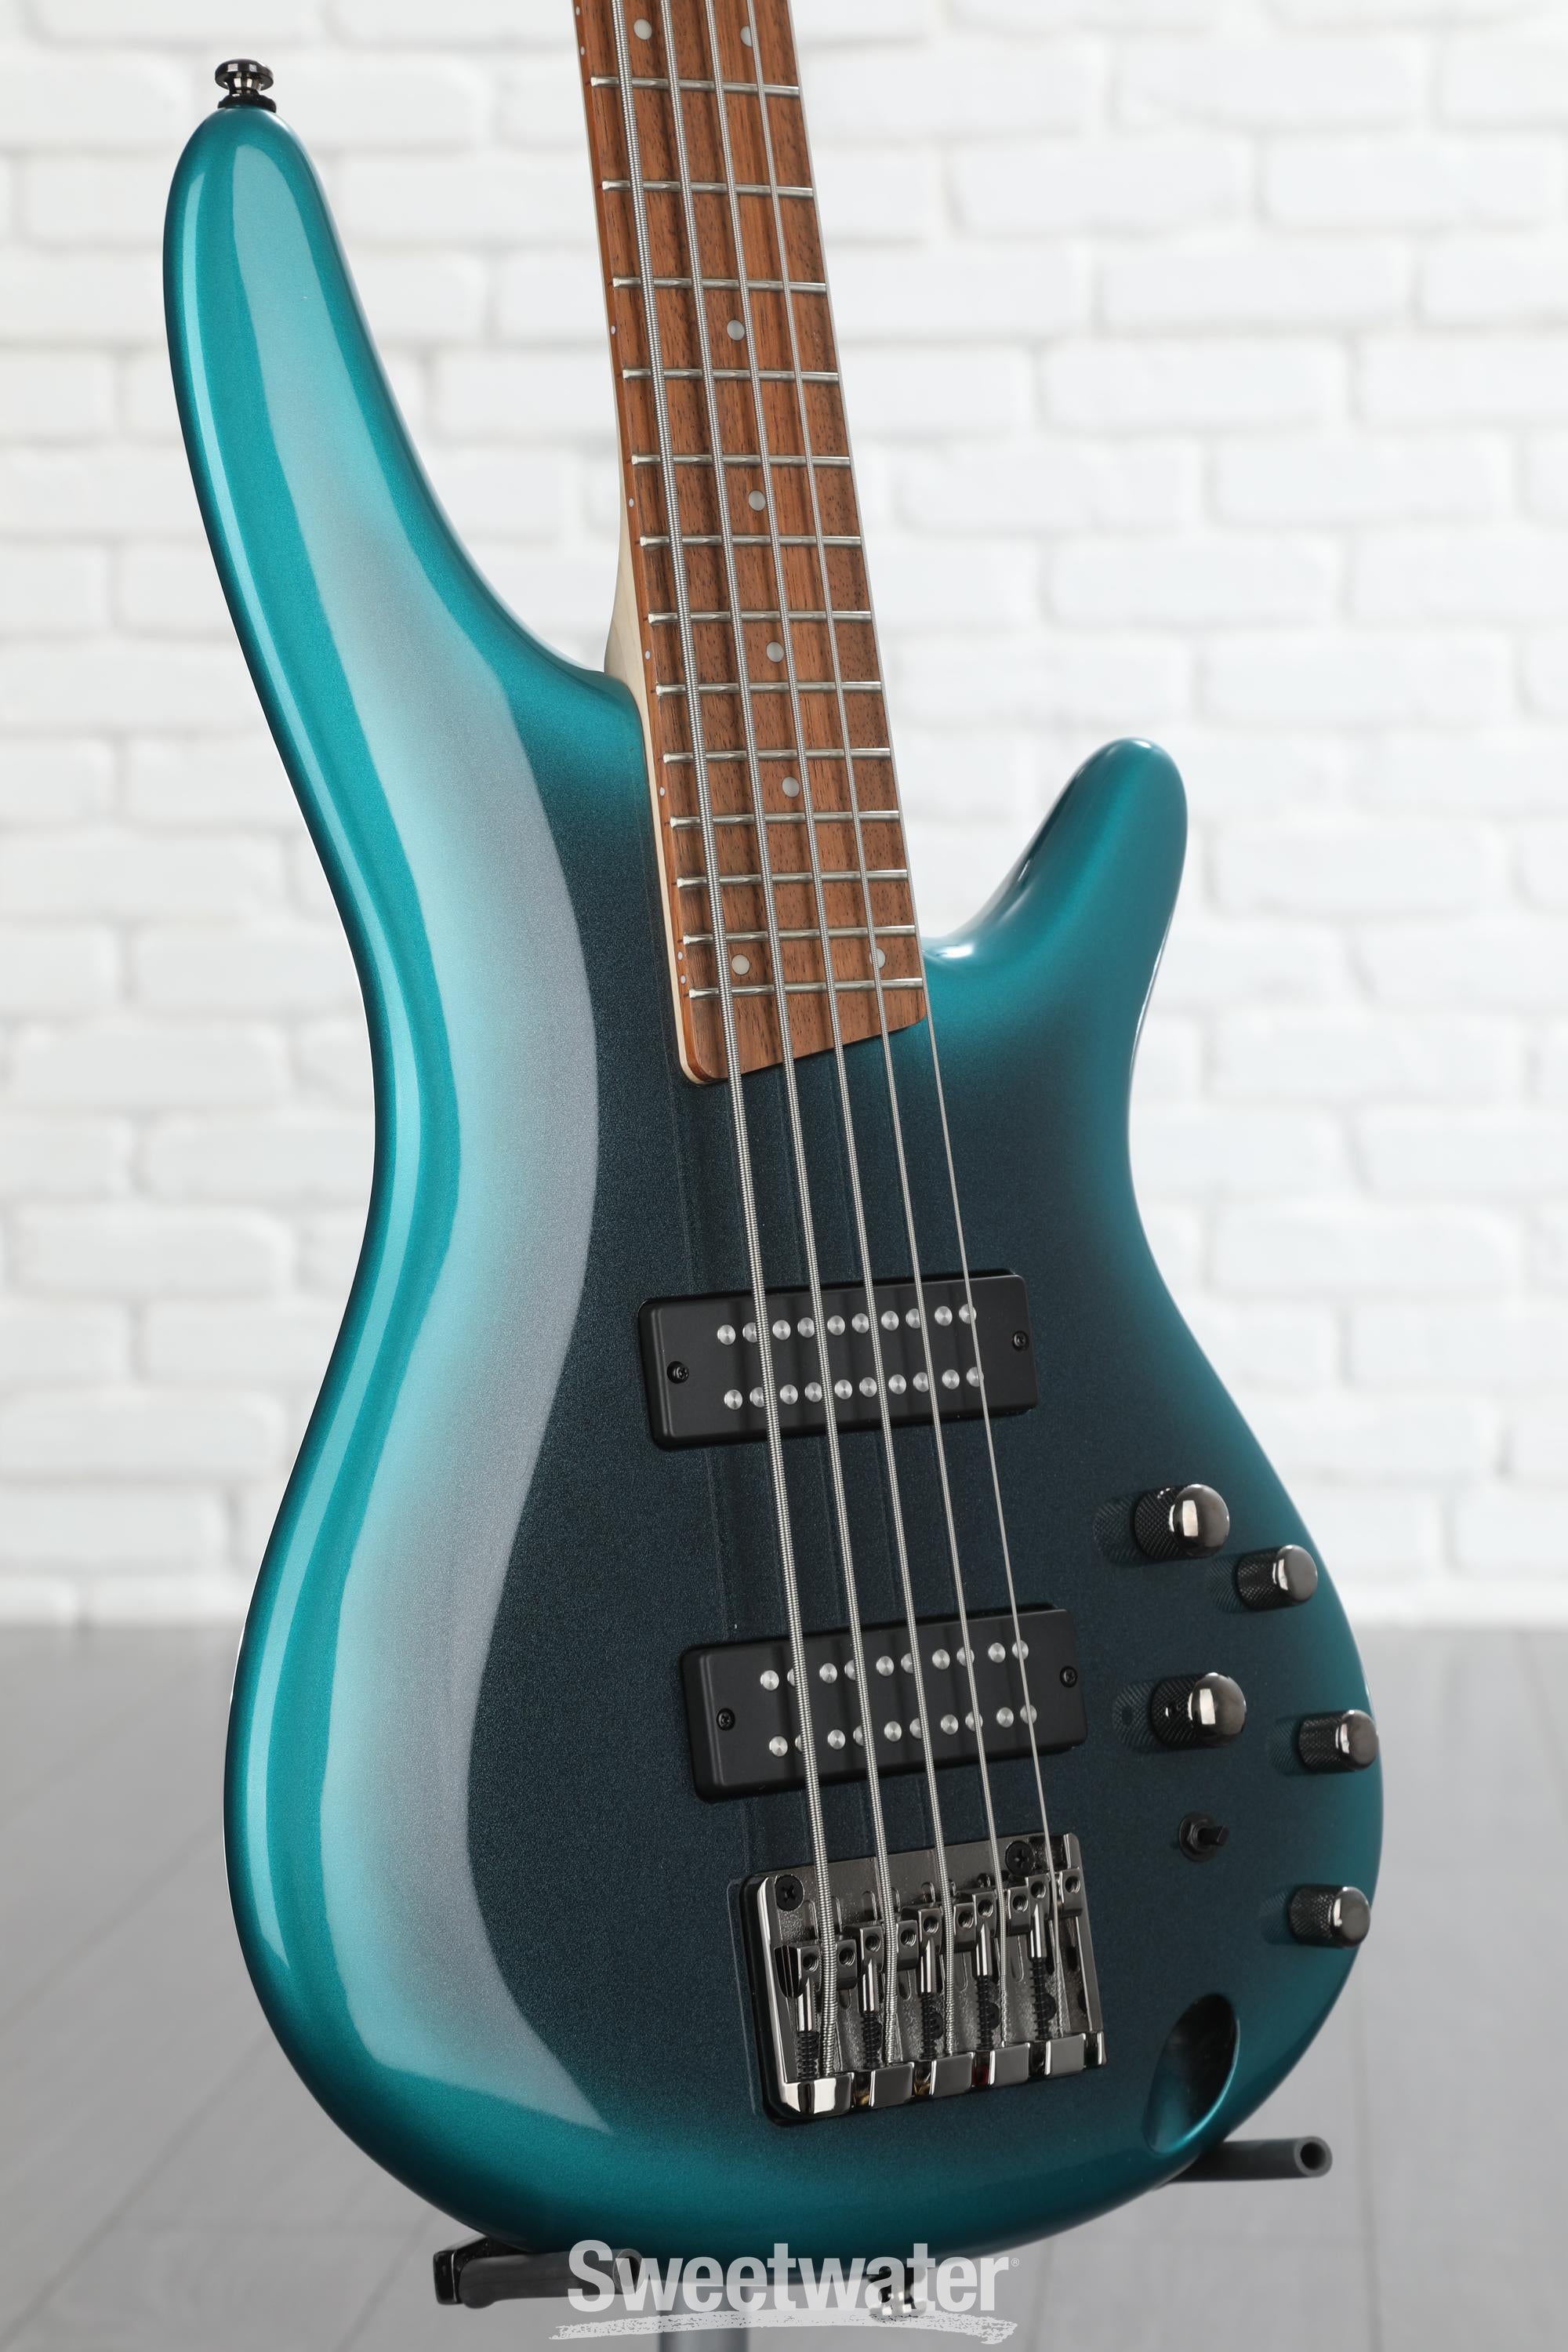 Ibanez Standard SR305E Bass Guitar - Cerulean Aura Burst